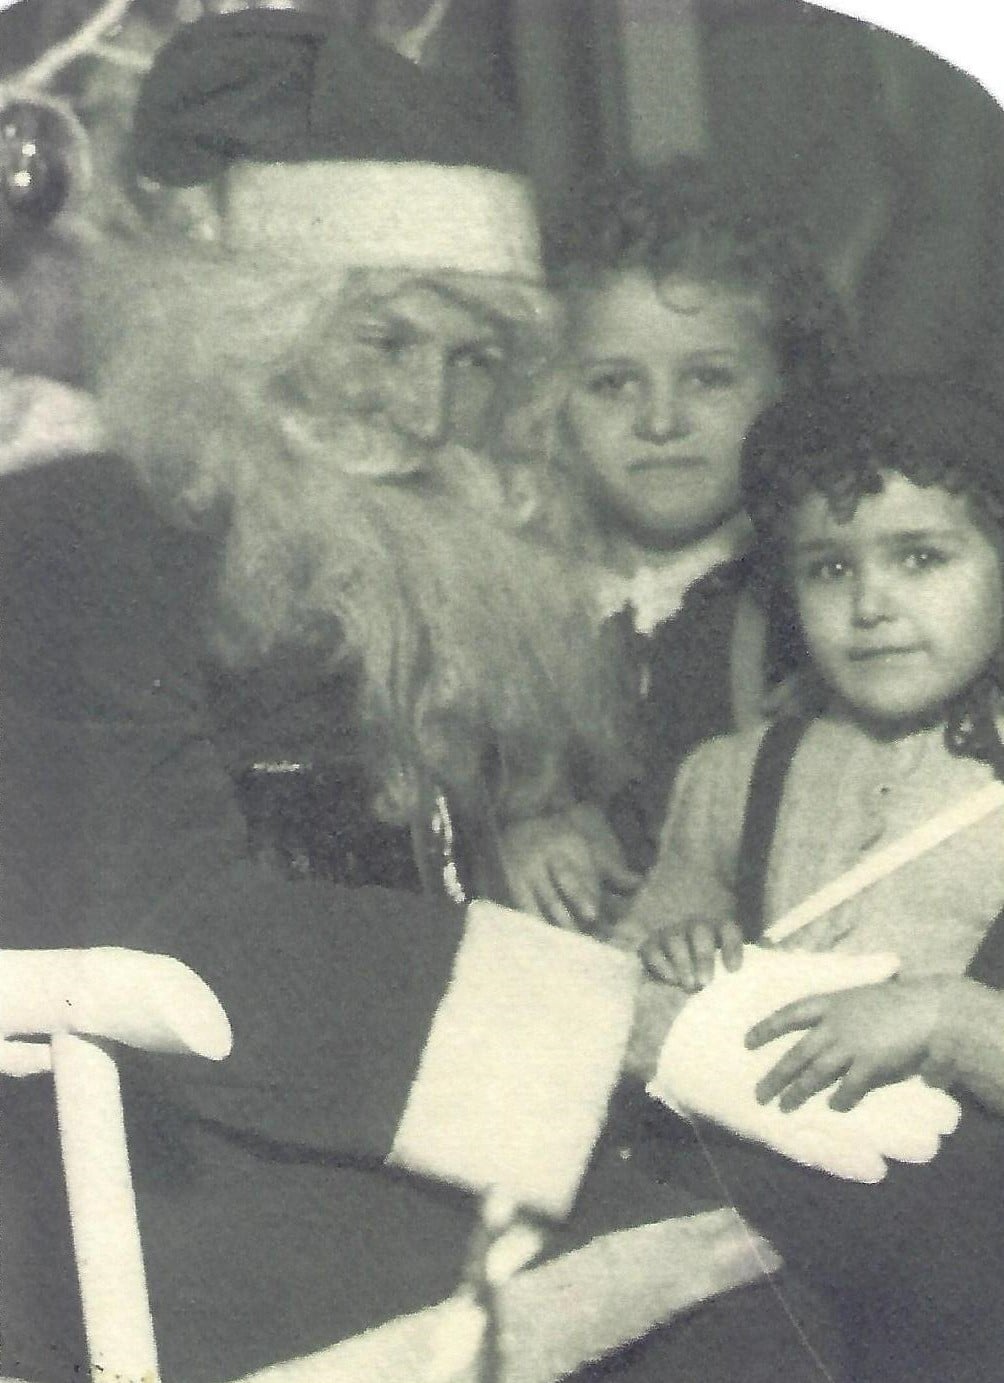 Carol und Roberta auf dem Schoß des Weihnachtsmanns. Verbessert und repariert mit MyHeritage